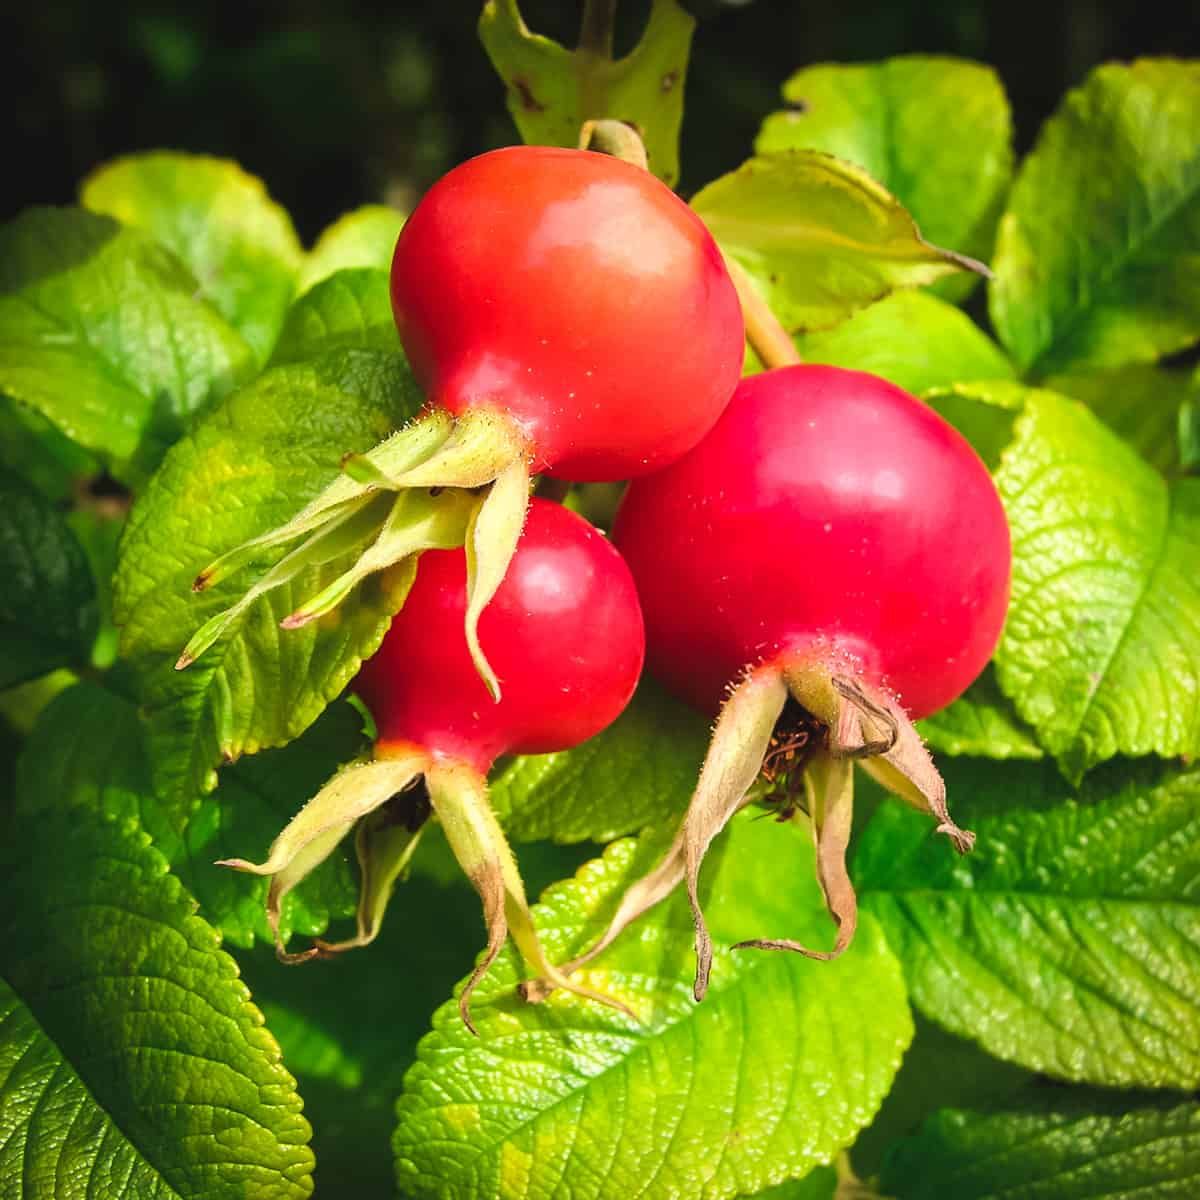 Harvested rose hips for edible uses on Thursd